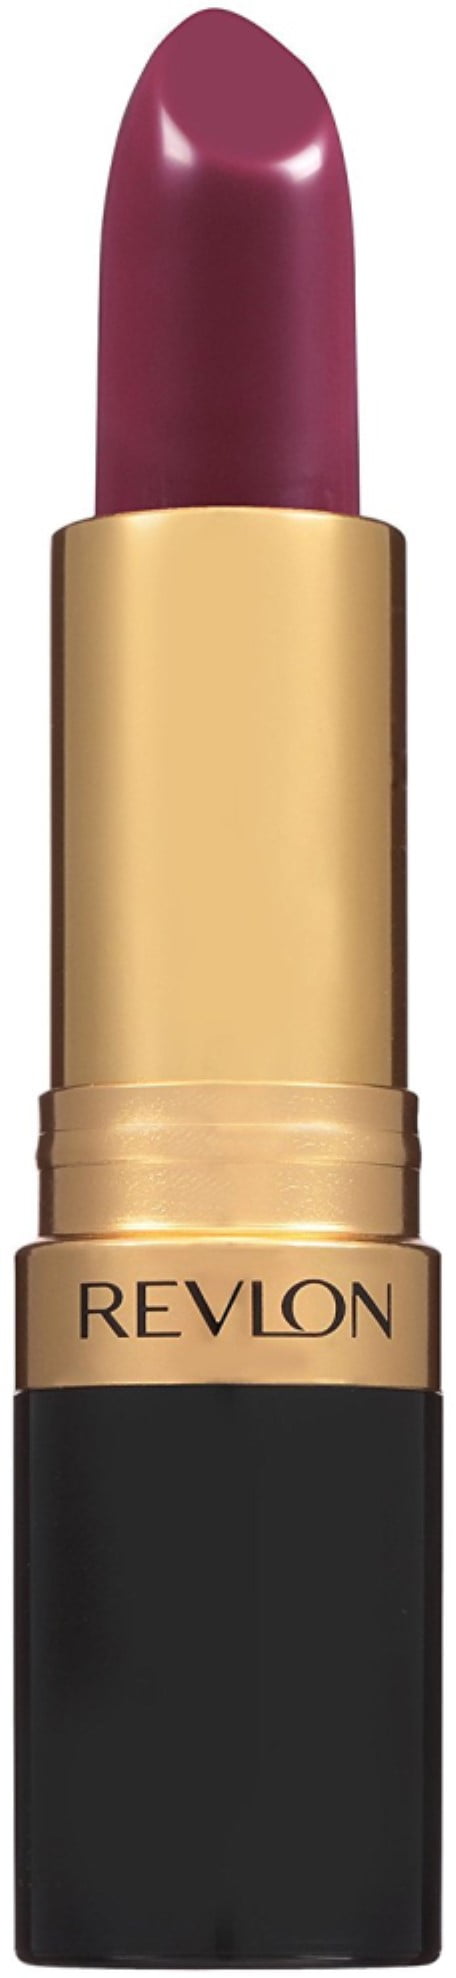 Revlon Super Lustrous Lipstick, Naughty Plum 0.15 oz (Pack of 2)